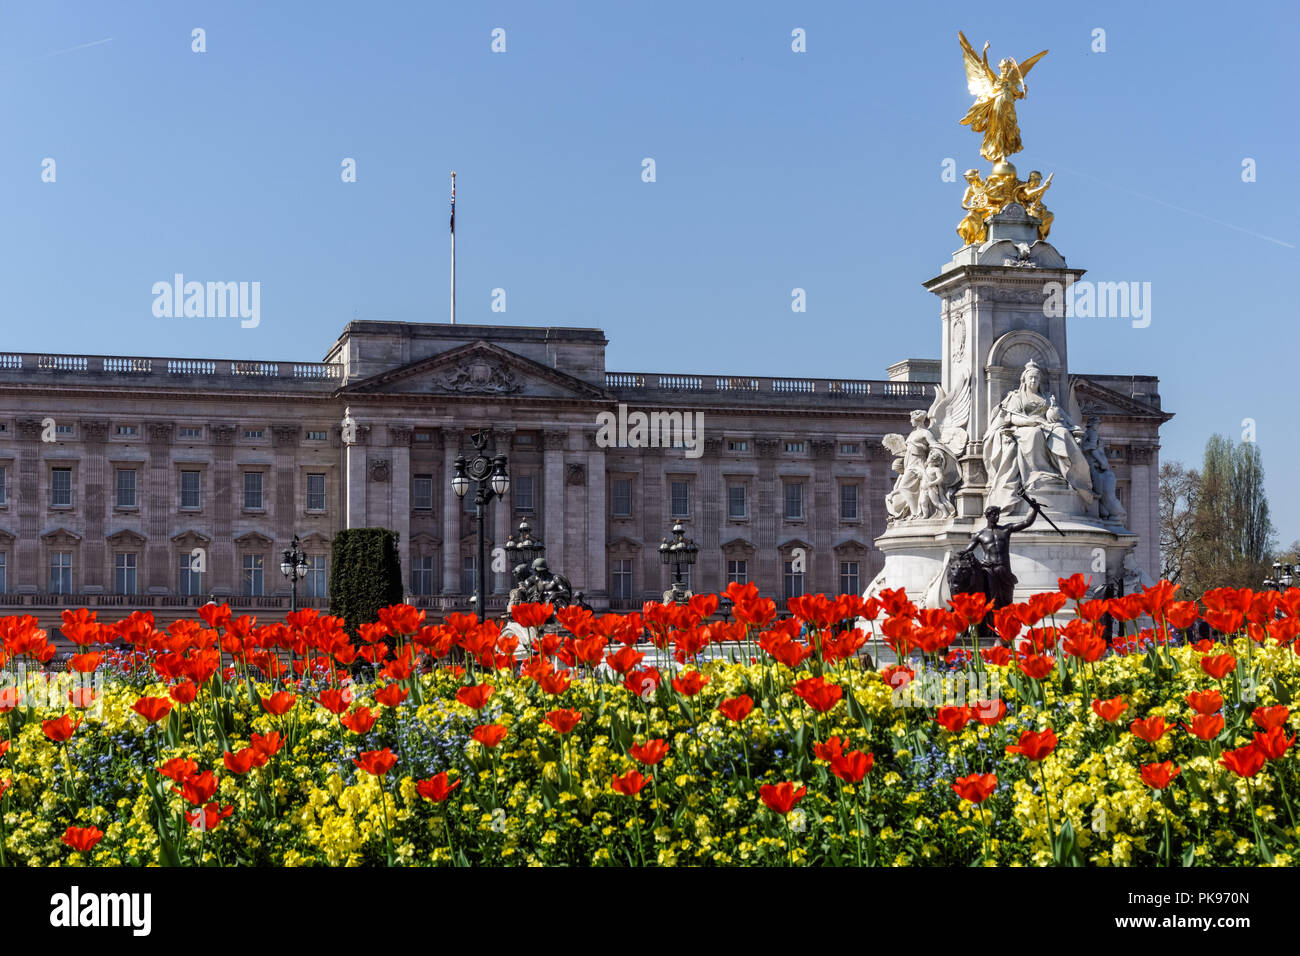 Le palais de Buckingham avec Mémorial Victoria à Londres, Angleterre Royaume-Uni UK Banque D'Images